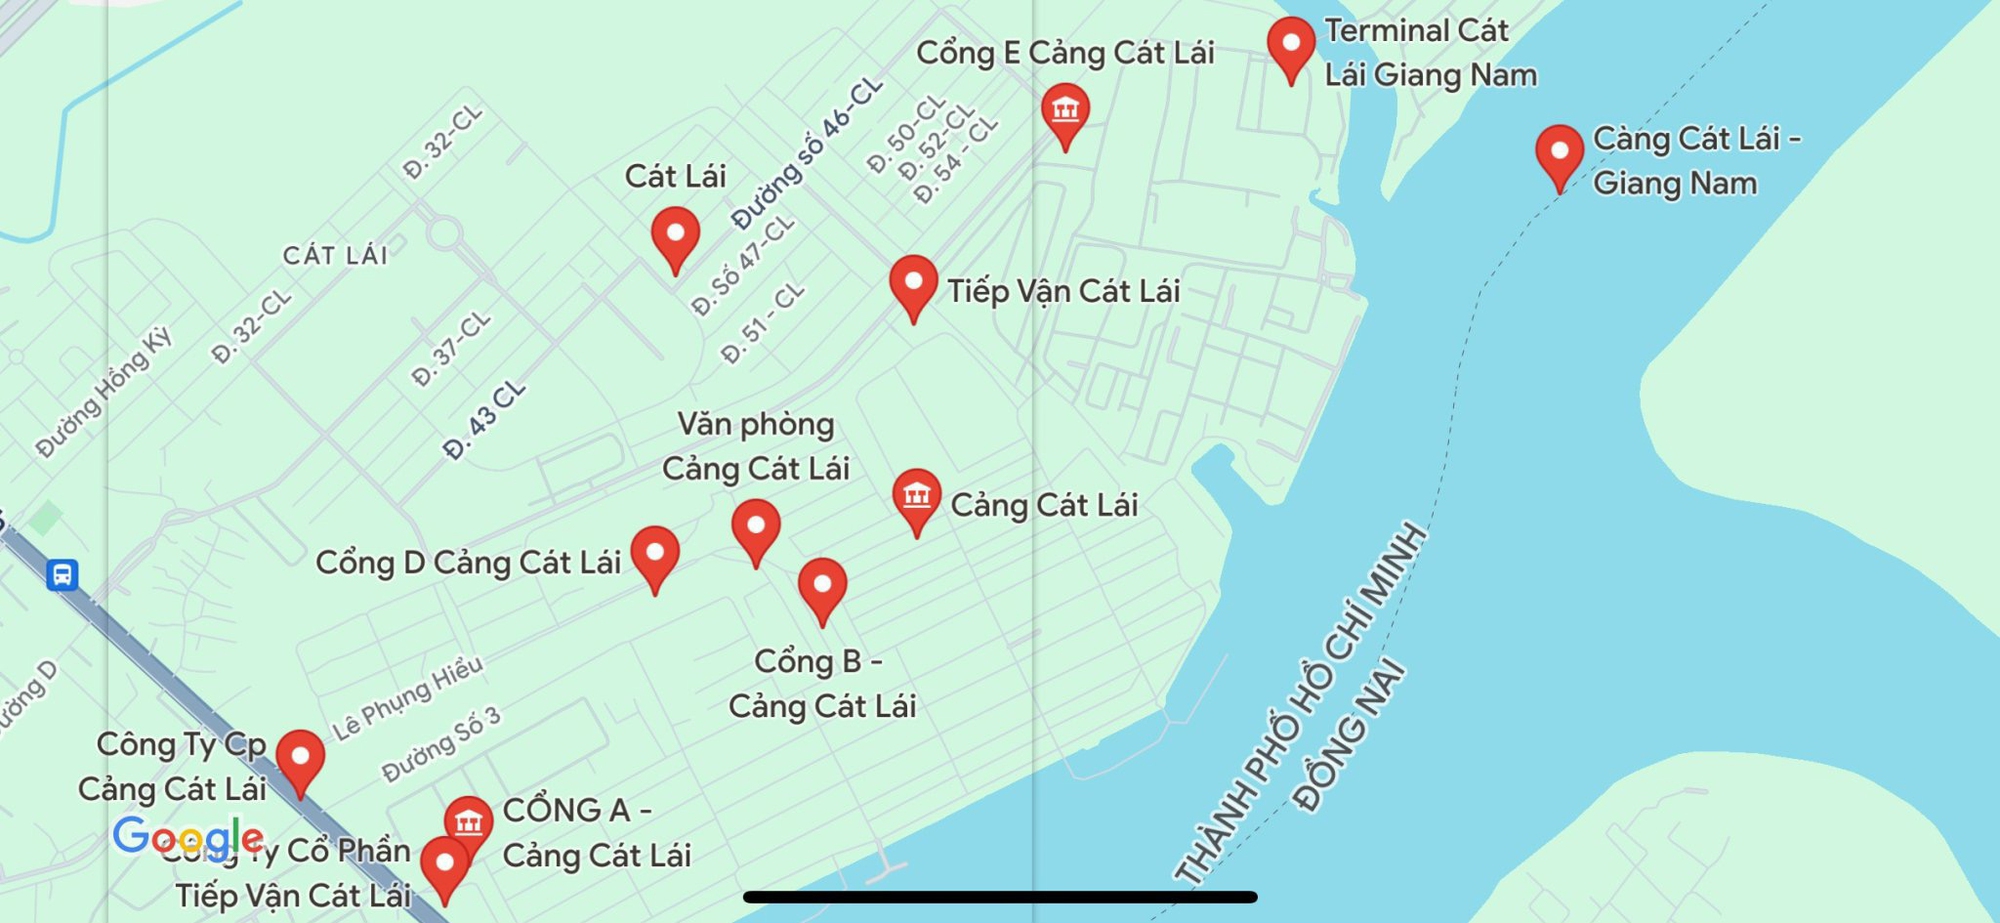 Toàn cảnh cảng biển lớn nhất Việt Nam, có lượng bốc dỡ container bằng tất cả cảng ở miền Bắc và miền Trung gộp lại - Ảnh 3.